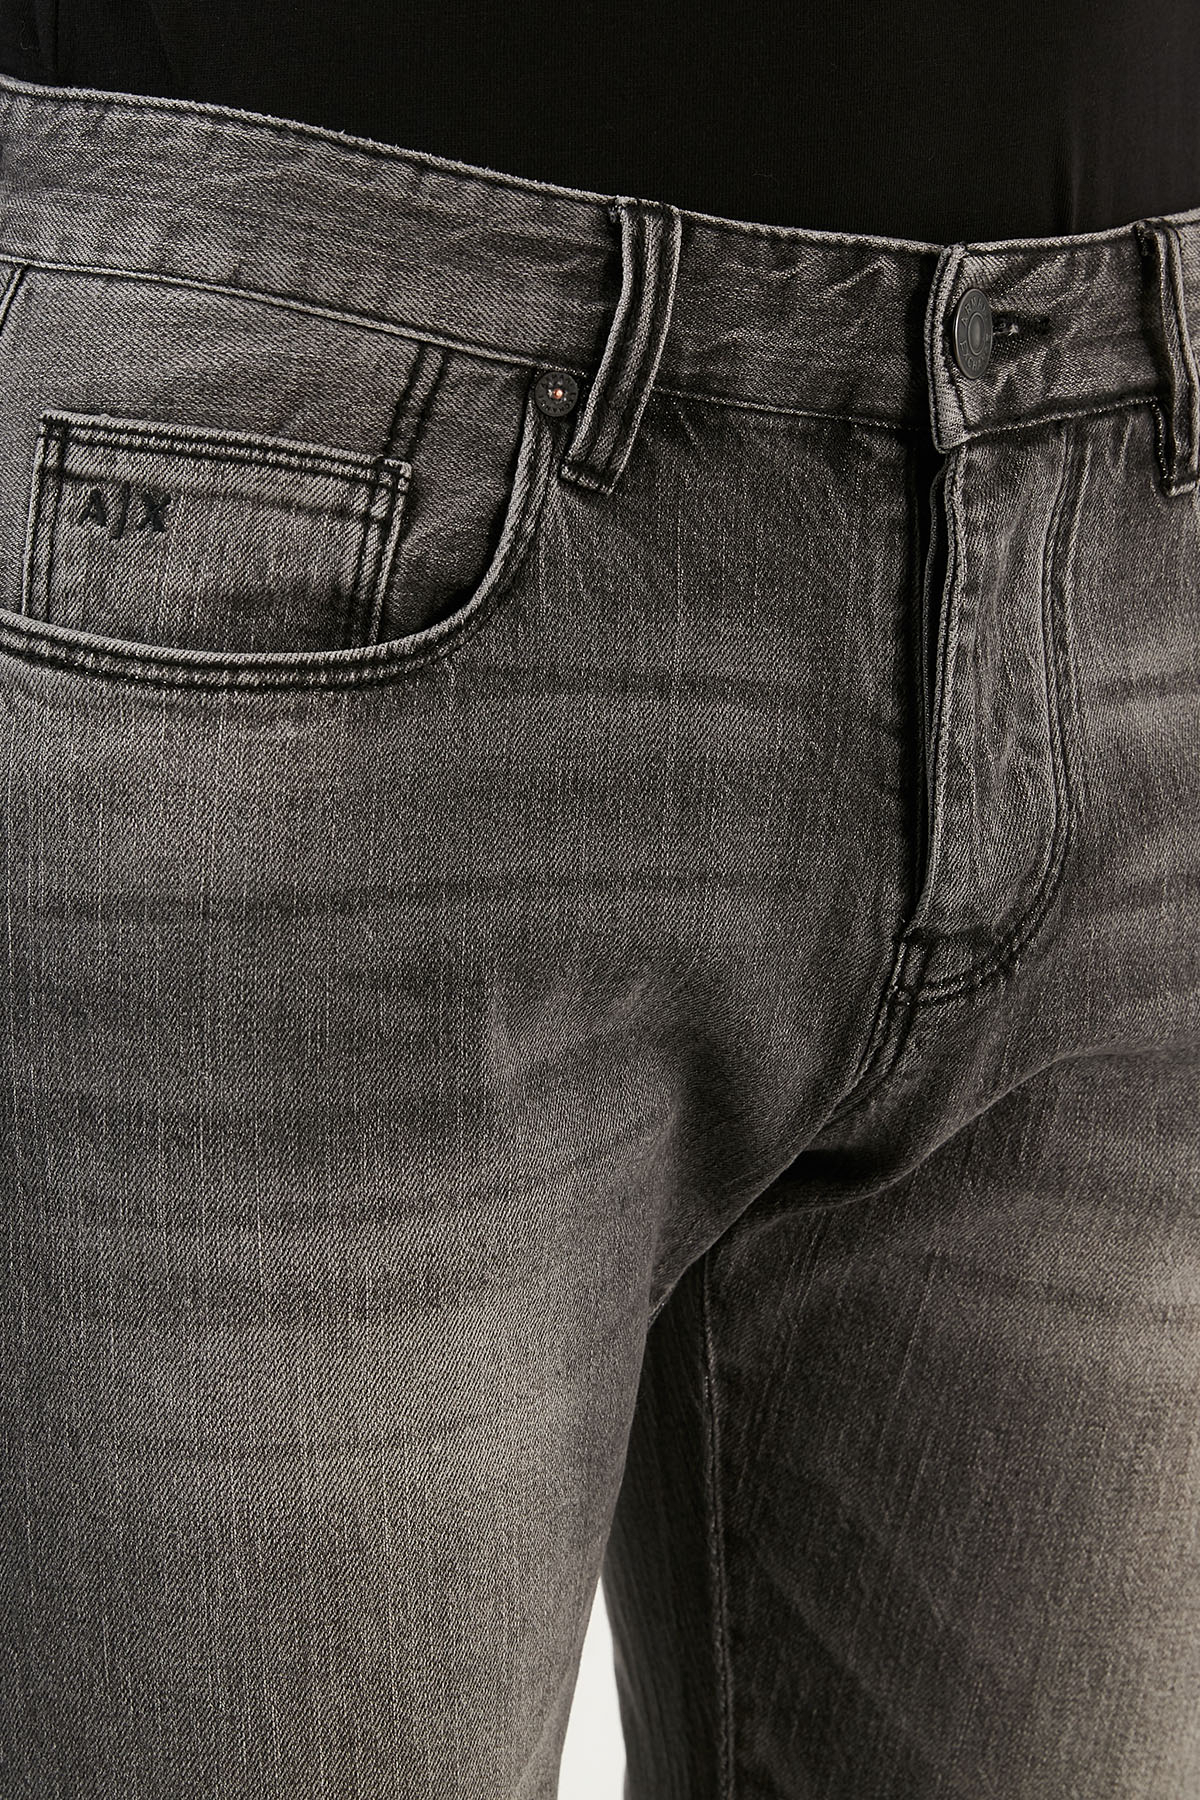 Armani Exchange J10 Pamuklu Slim Fit Jeans Erkek Kot Pantolon 6KZJ10 Z1KQZ 0903 GRİ